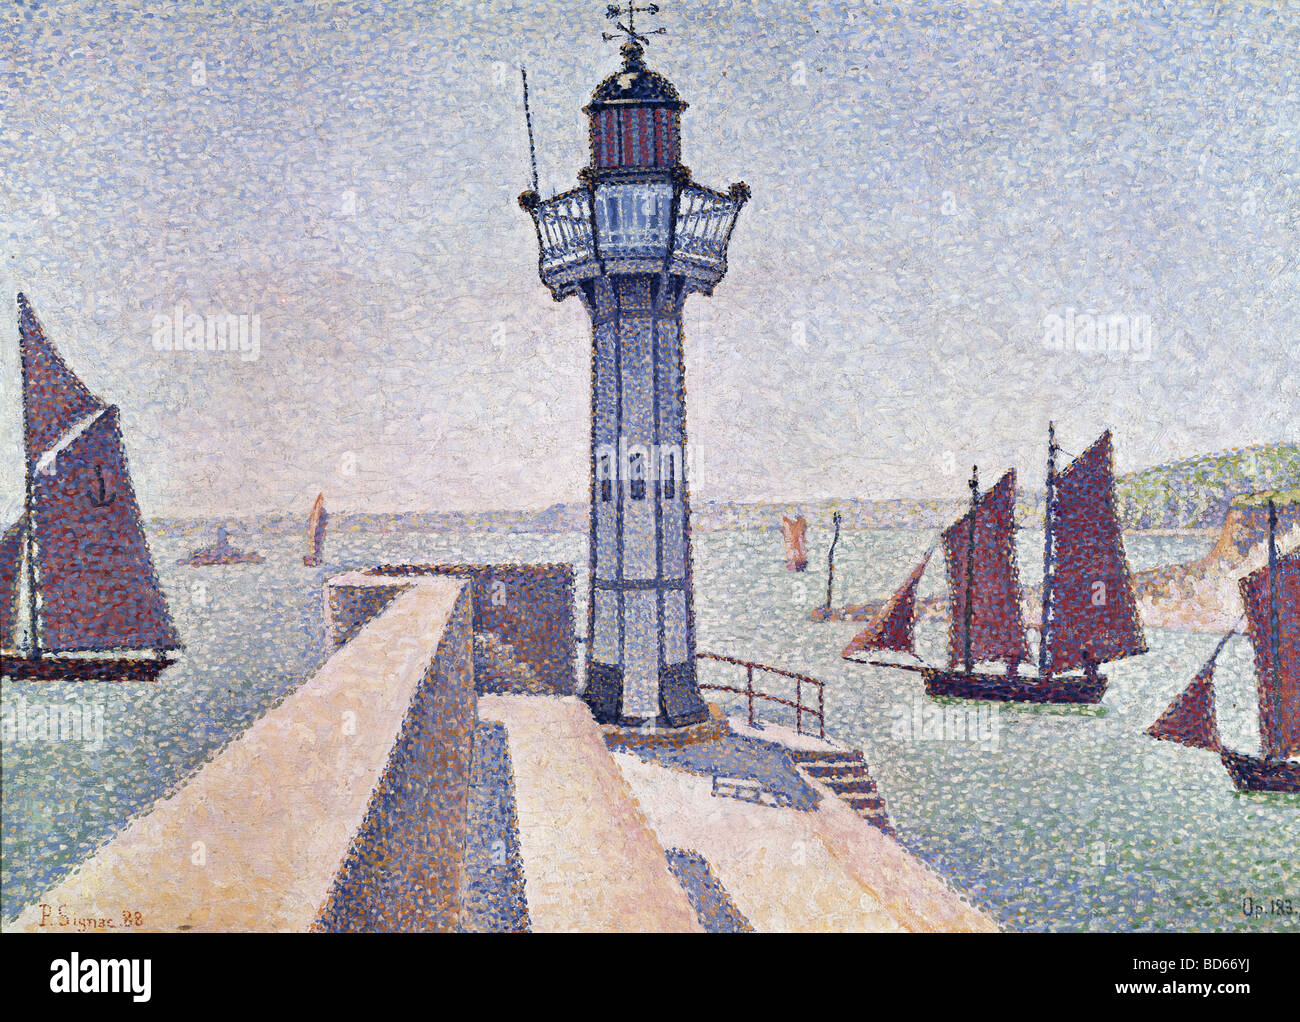 Bildende Kunst, Signac, Paul, (1863-1935), Malerei, "Portrieux, Le Phare", 1888, Rijksmuseum Kröller-Müller, Otterlo, Französisch, n Stockfoto